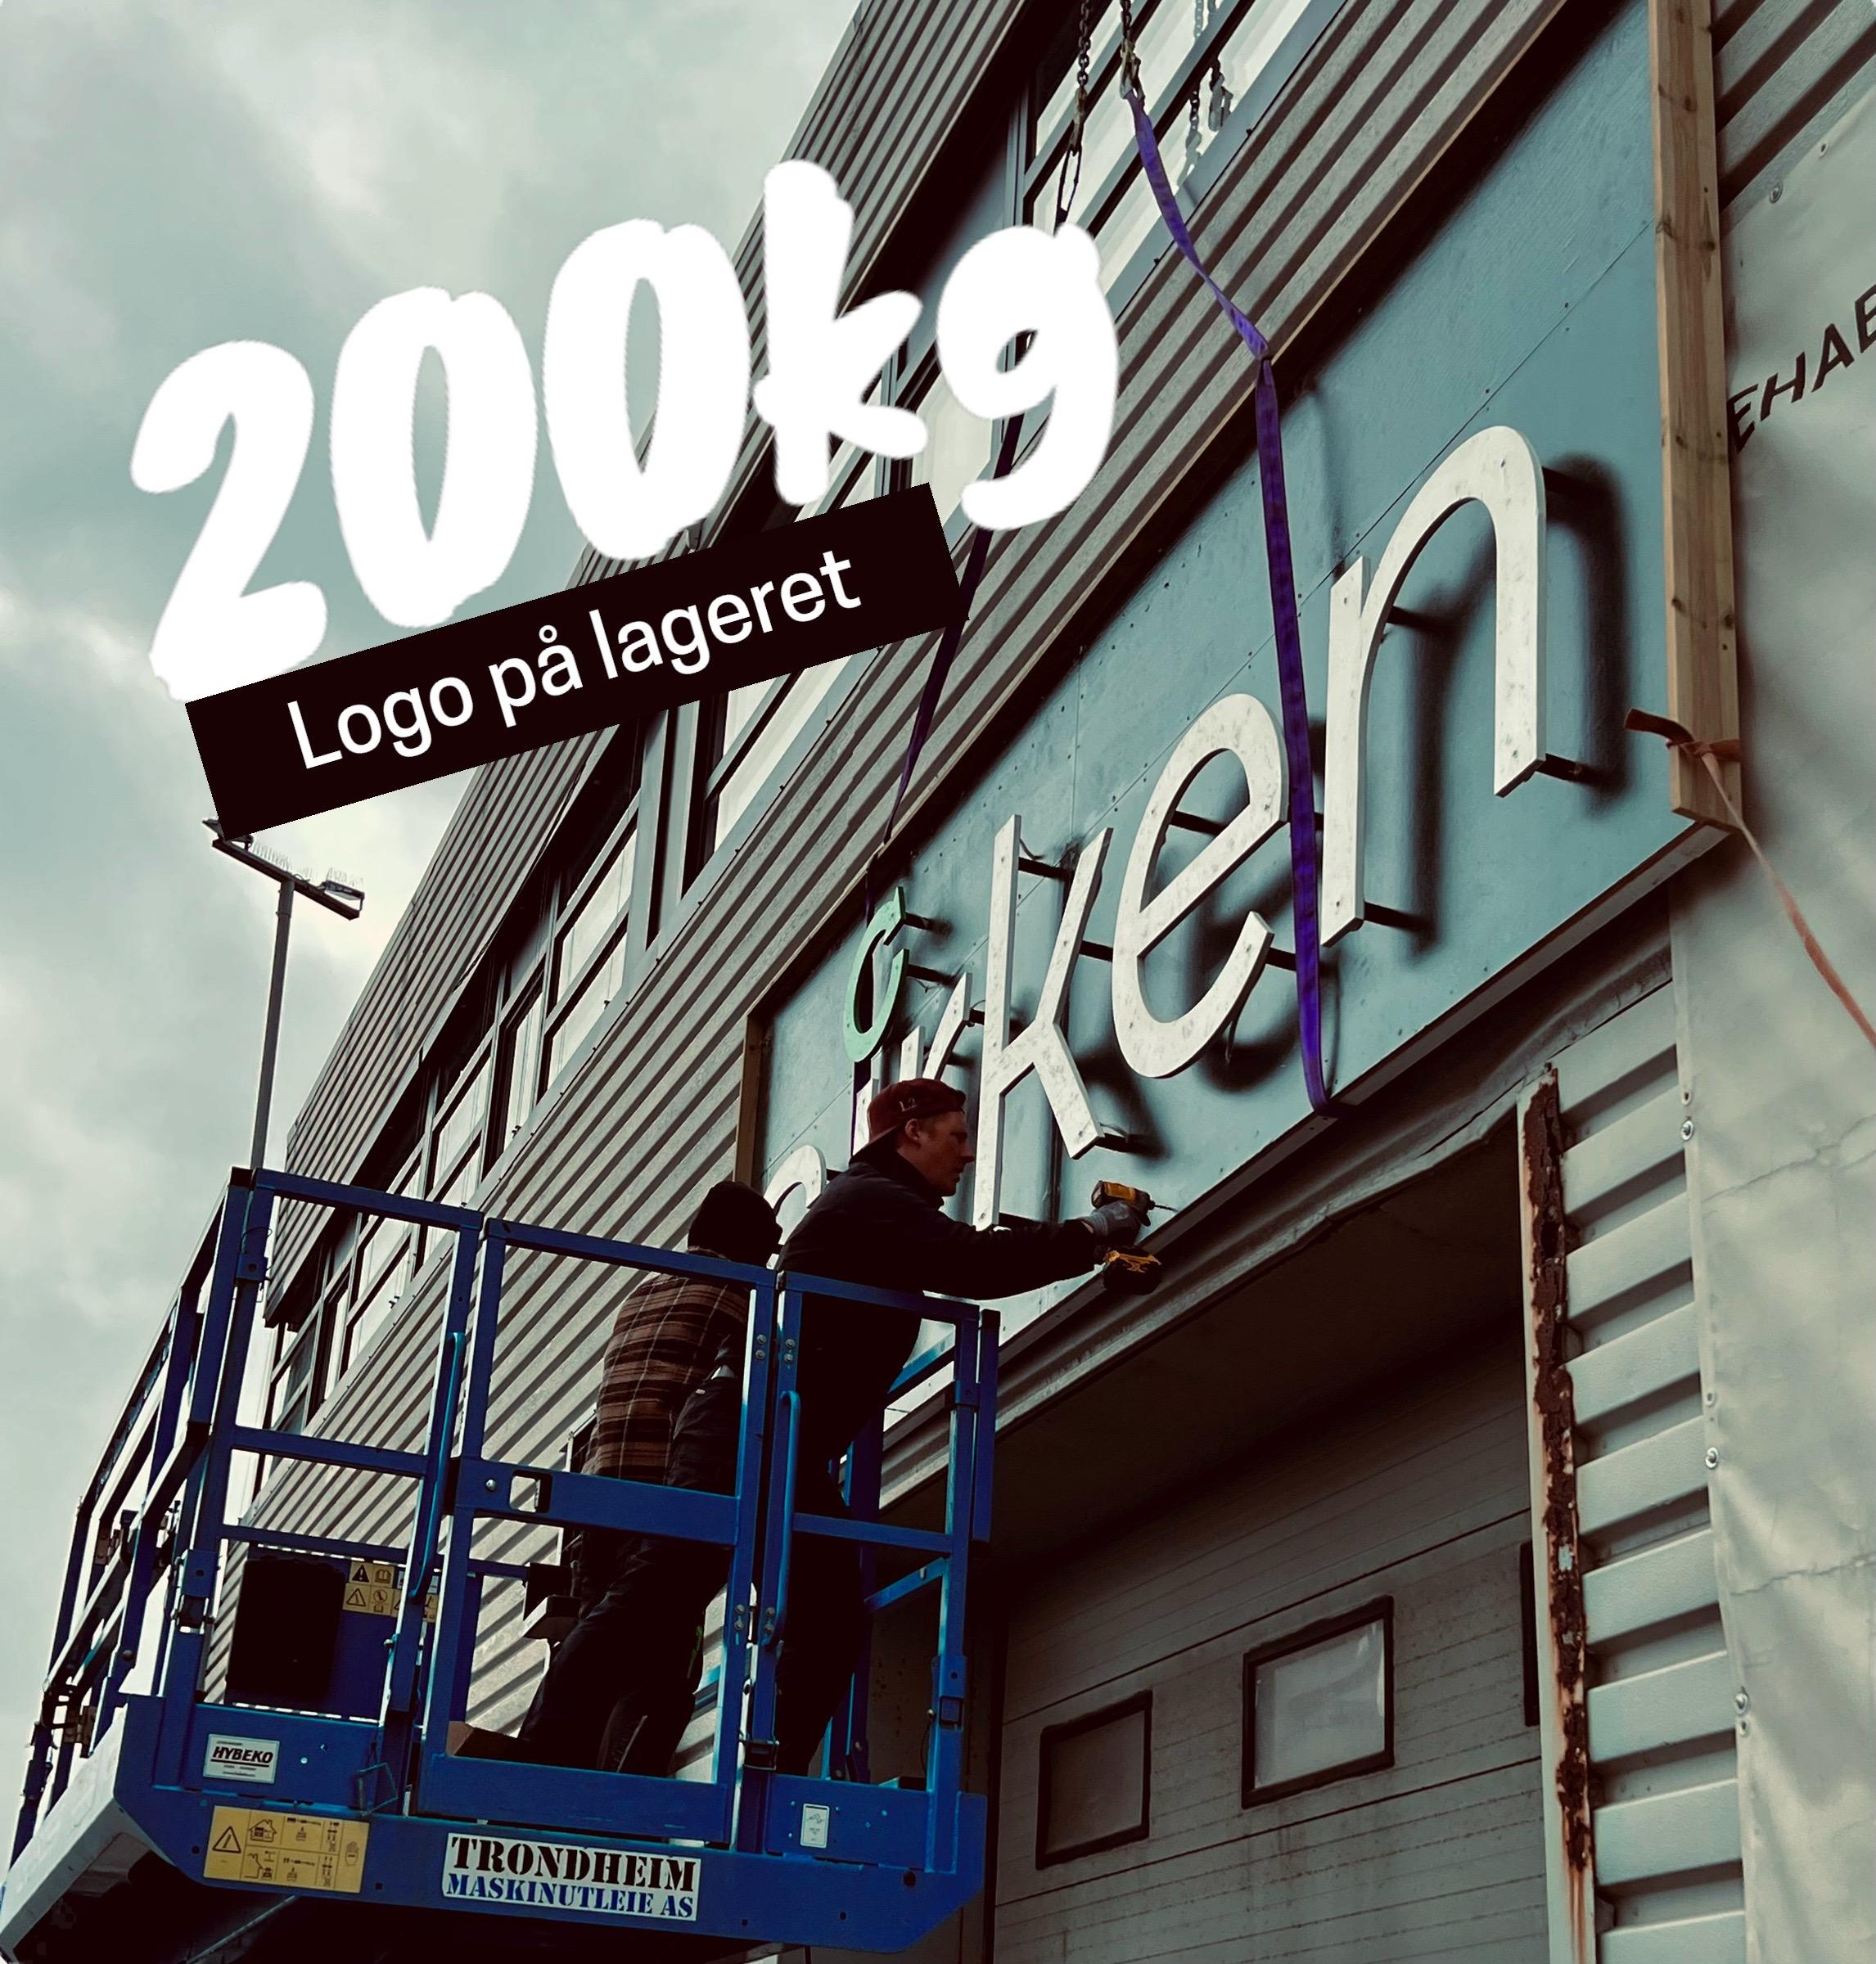 200 kg tung logo på lageret bygget av ombruk